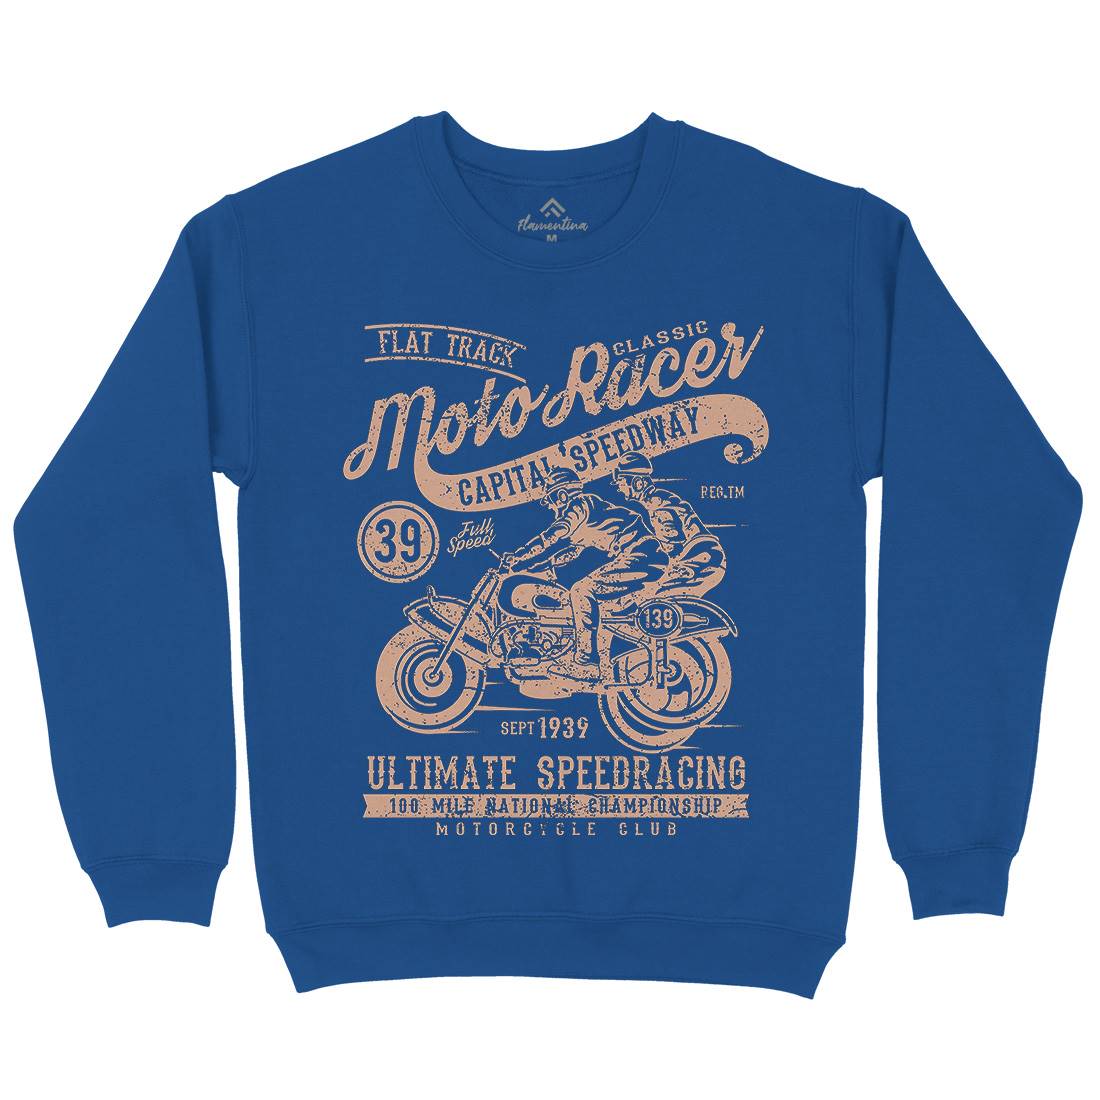 Moto Racer Kids Crew Neck Sweatshirt Motorcycles A090